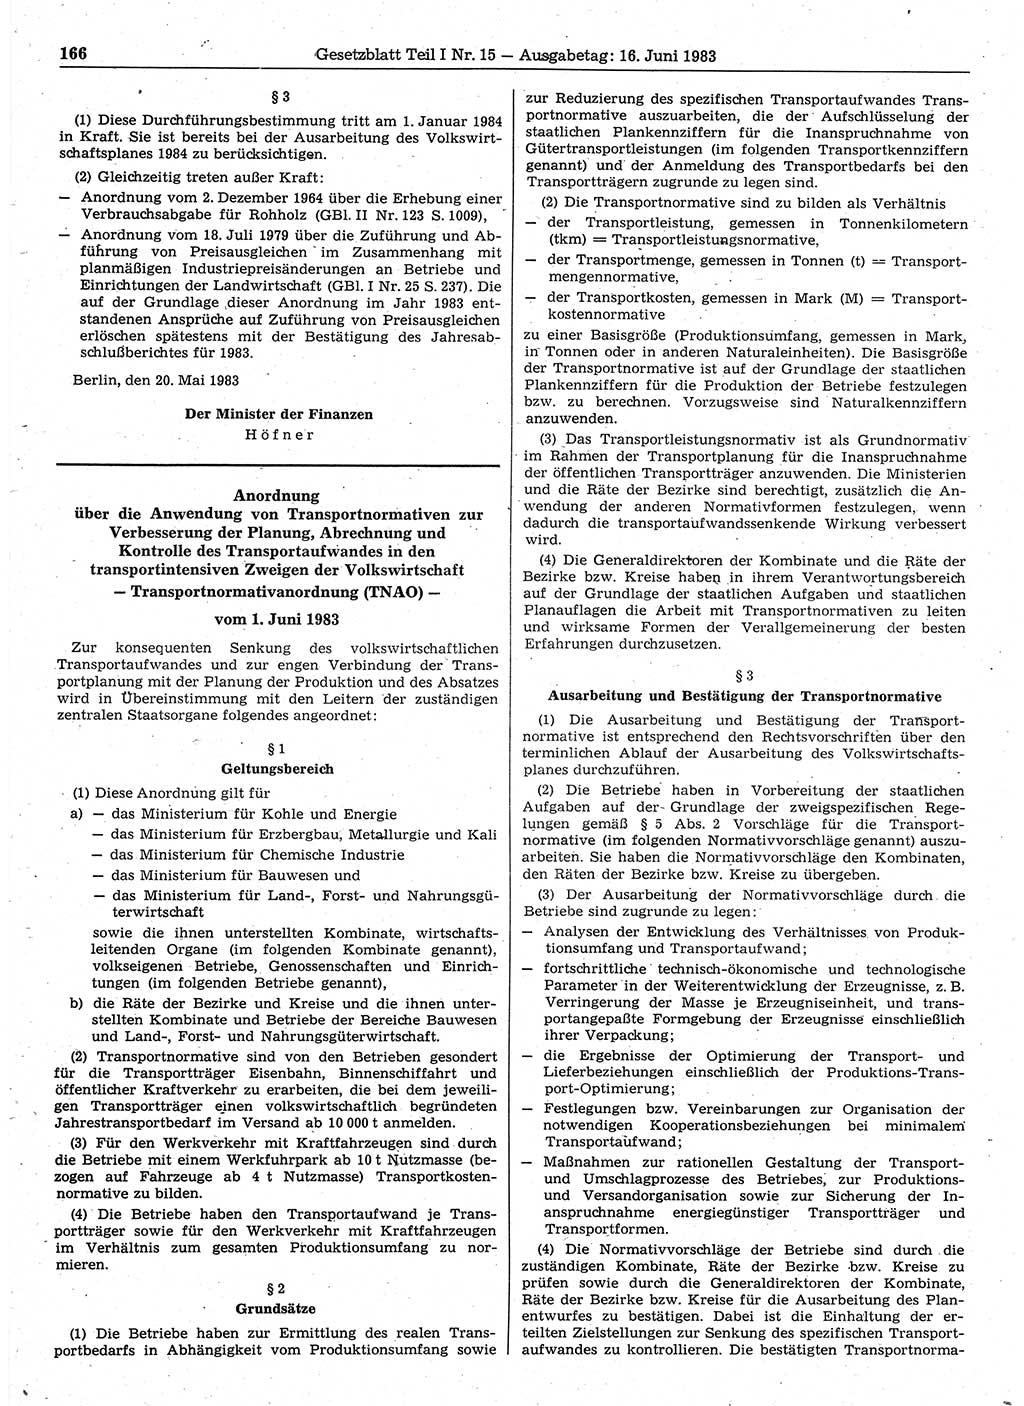 Gesetzblatt (GBl.) der Deutschen Demokratischen Republik (DDR) Teil Ⅰ 1983, Seite 166 (GBl. DDR Ⅰ 1983, S. 166)